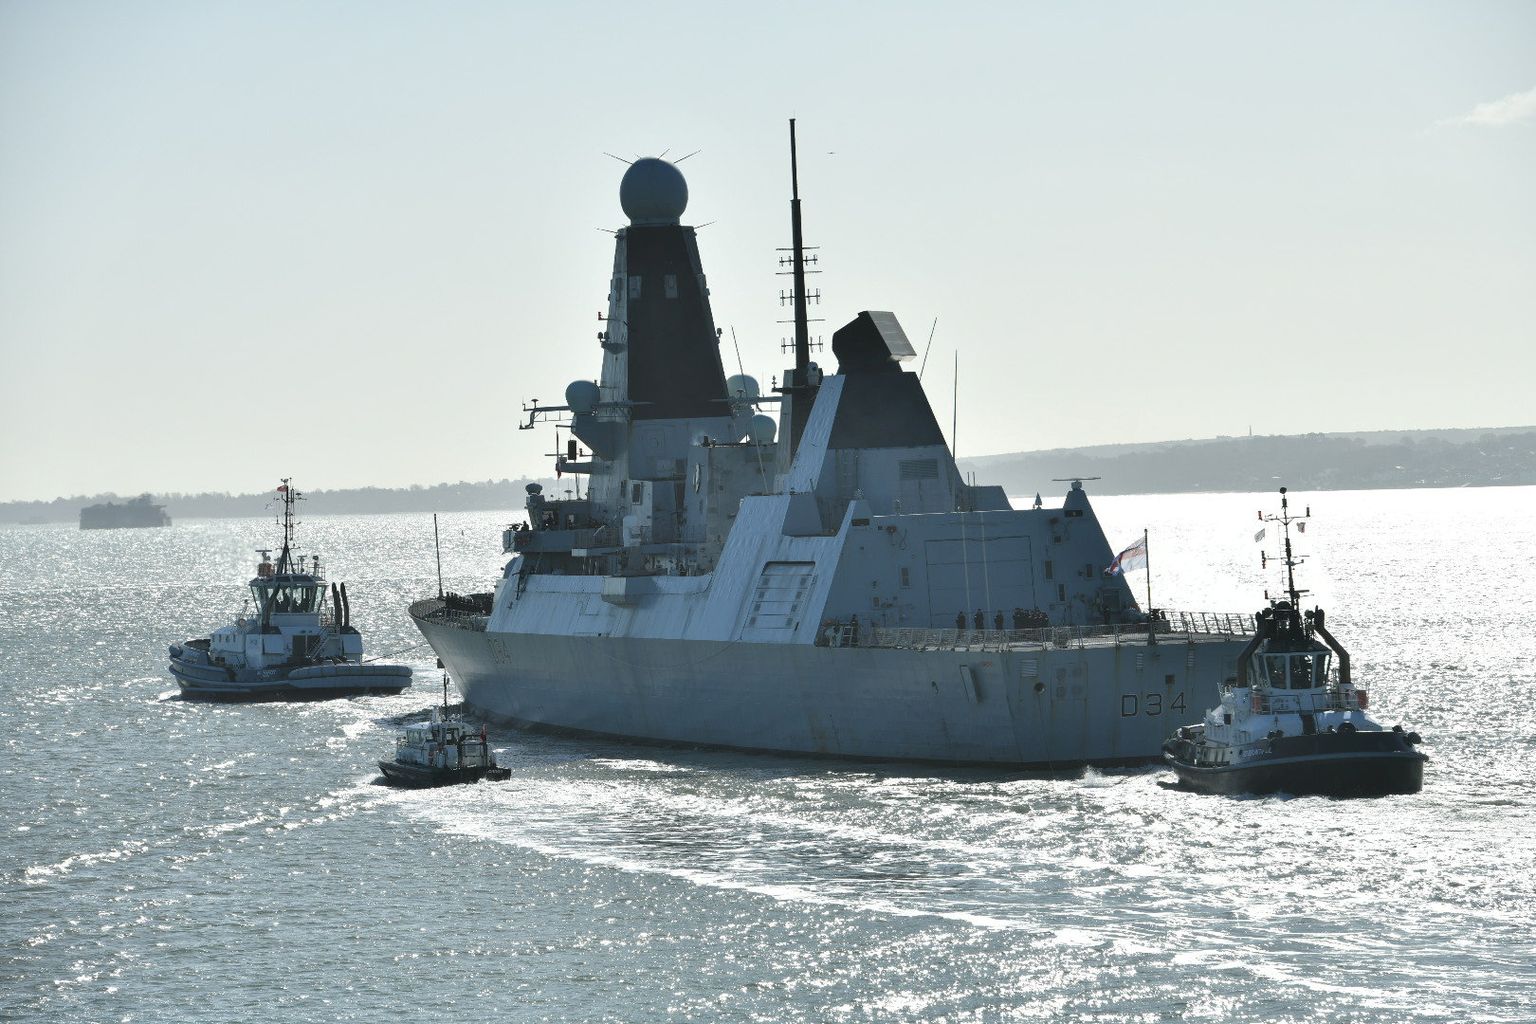 Ühendkuningriigi mereväe hävitaja HMS Diamond Type 45 lahkus täna 
Portsmouthi kuninglikust mereväebaasist, et suunduda NATO vägedele toeks Vahemere idaossa ja Mustale merele